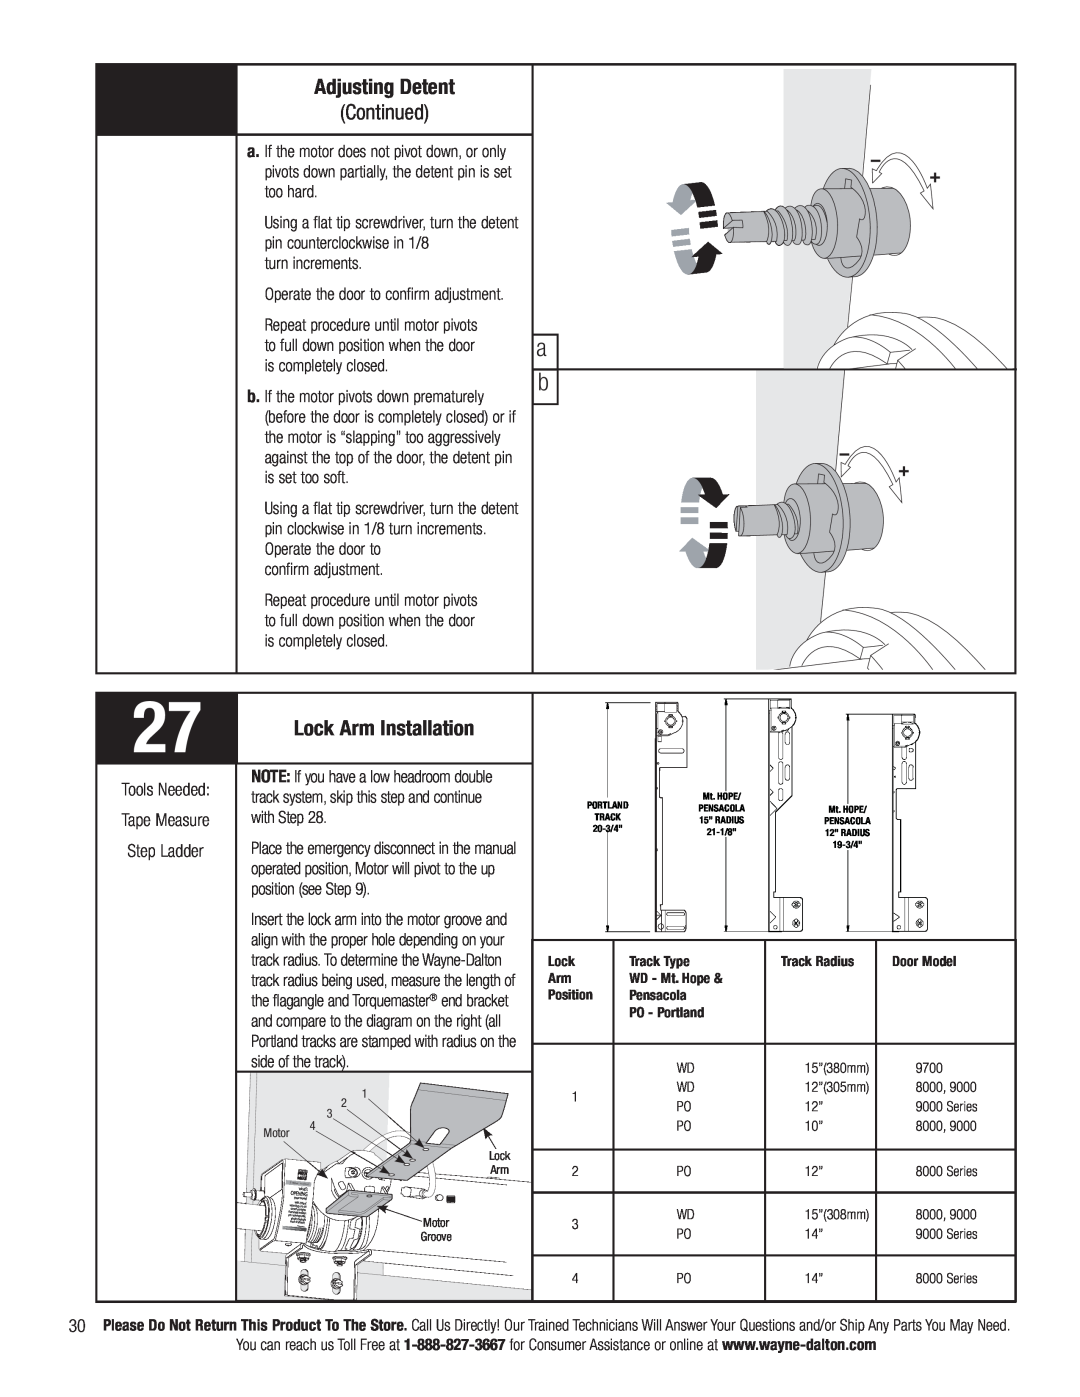 Wayne-Dalton 3790-Z installation instructions Adjusting Detent Continued, Lock Arm Installation 